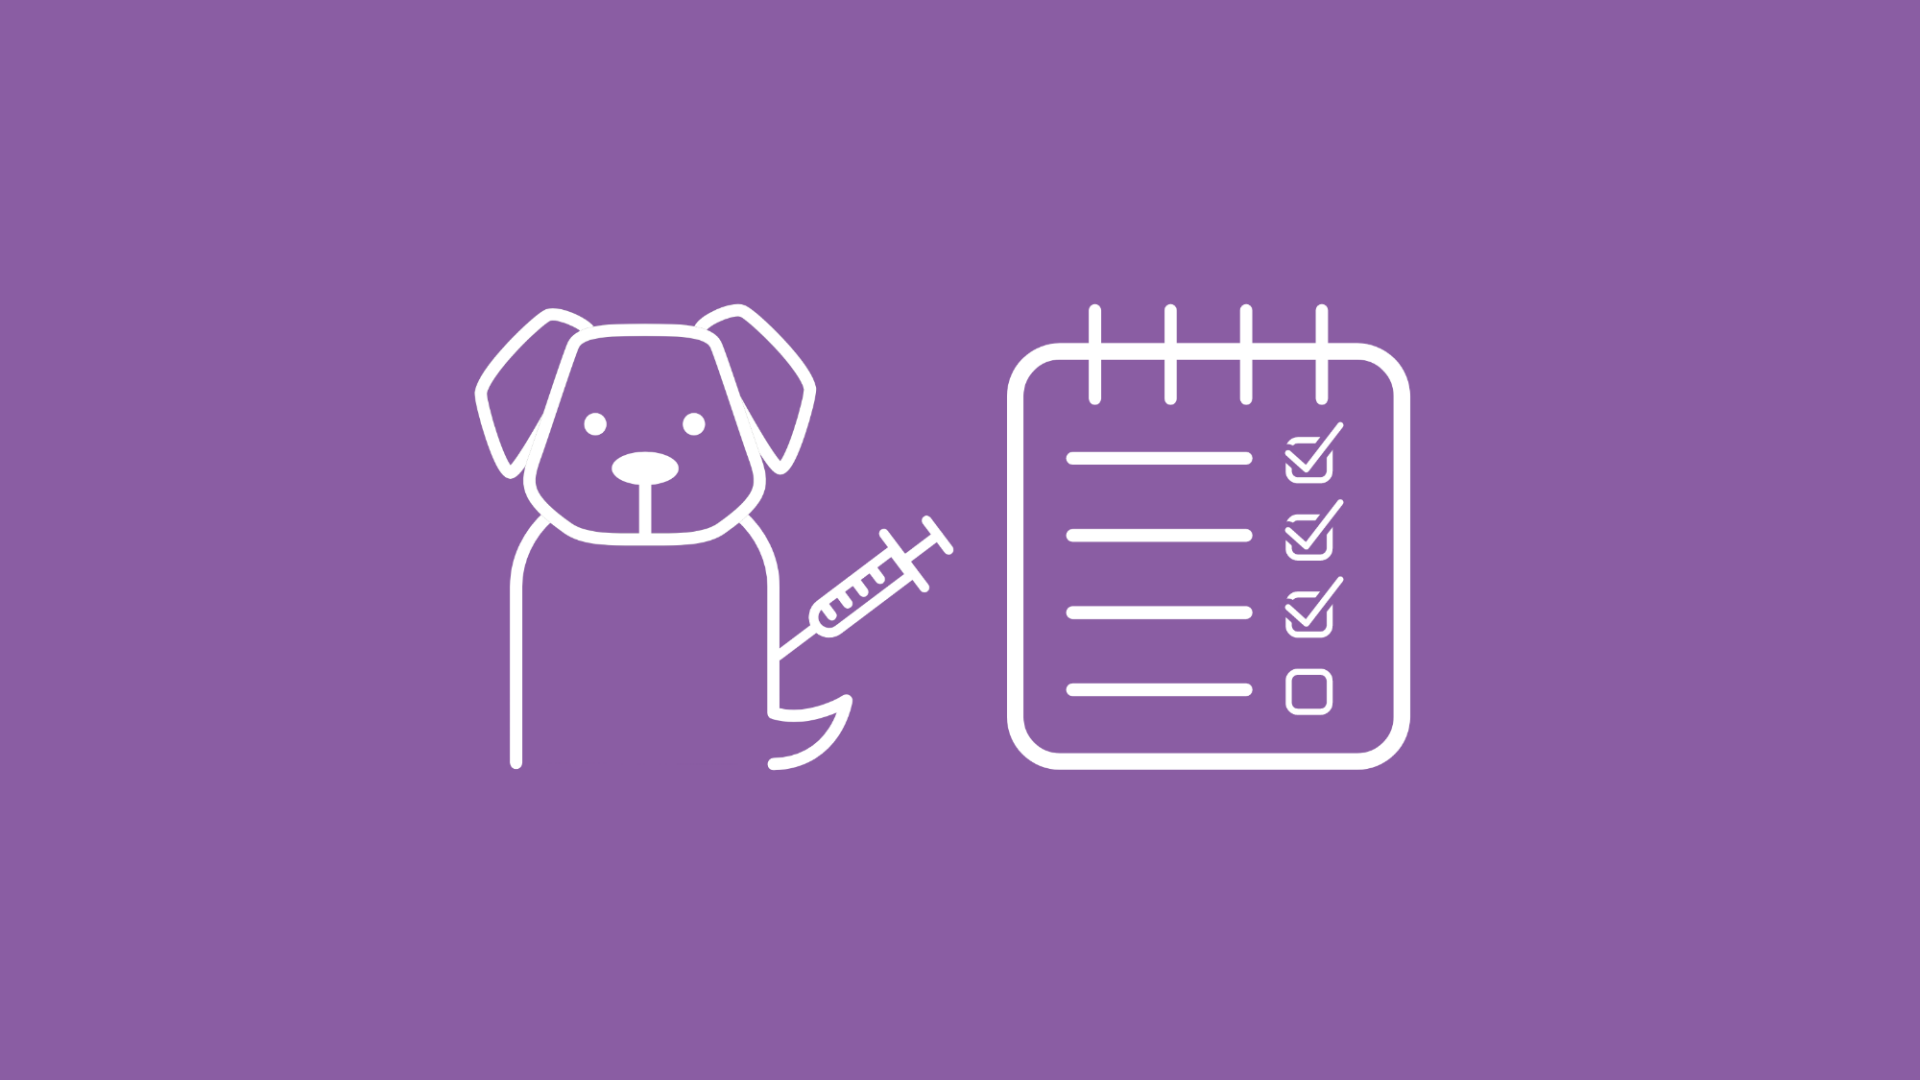 Eine Checkliste symbolisiert die Frage, ob ein Hund alle nötigen Impfungen erhalten hat. 